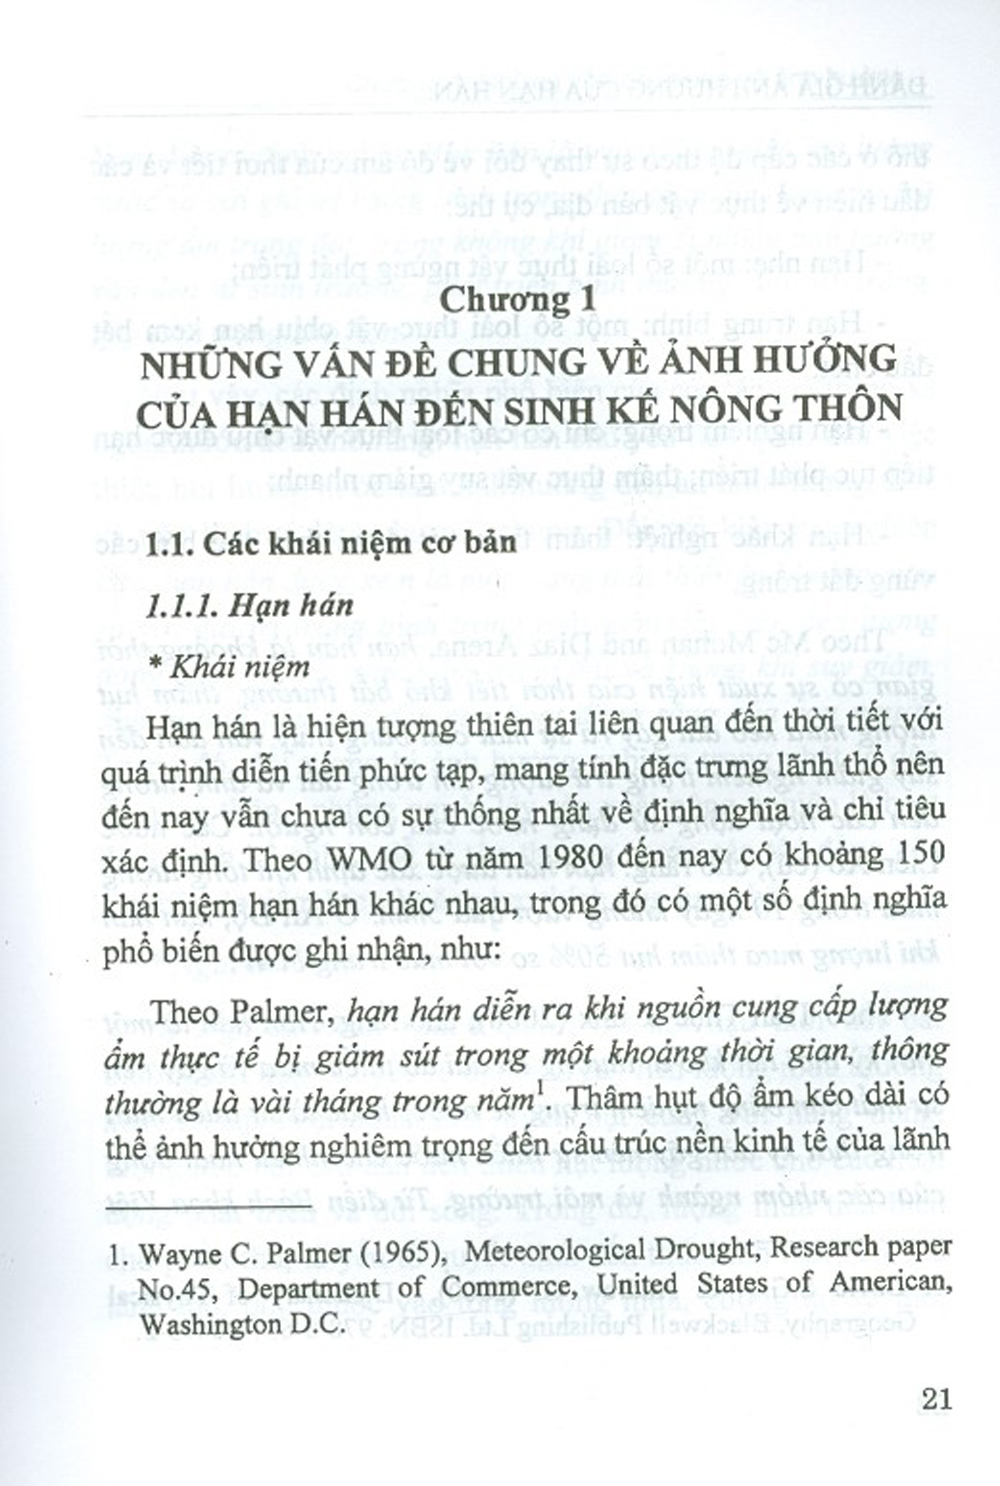 Đánh Giá Ảnh Hưởng Của Hạn Hán Đến Sinh Kế Dân Cư Nông Thôn Tỉnh Ninh Thuận (Sách Chuyên Khảo)